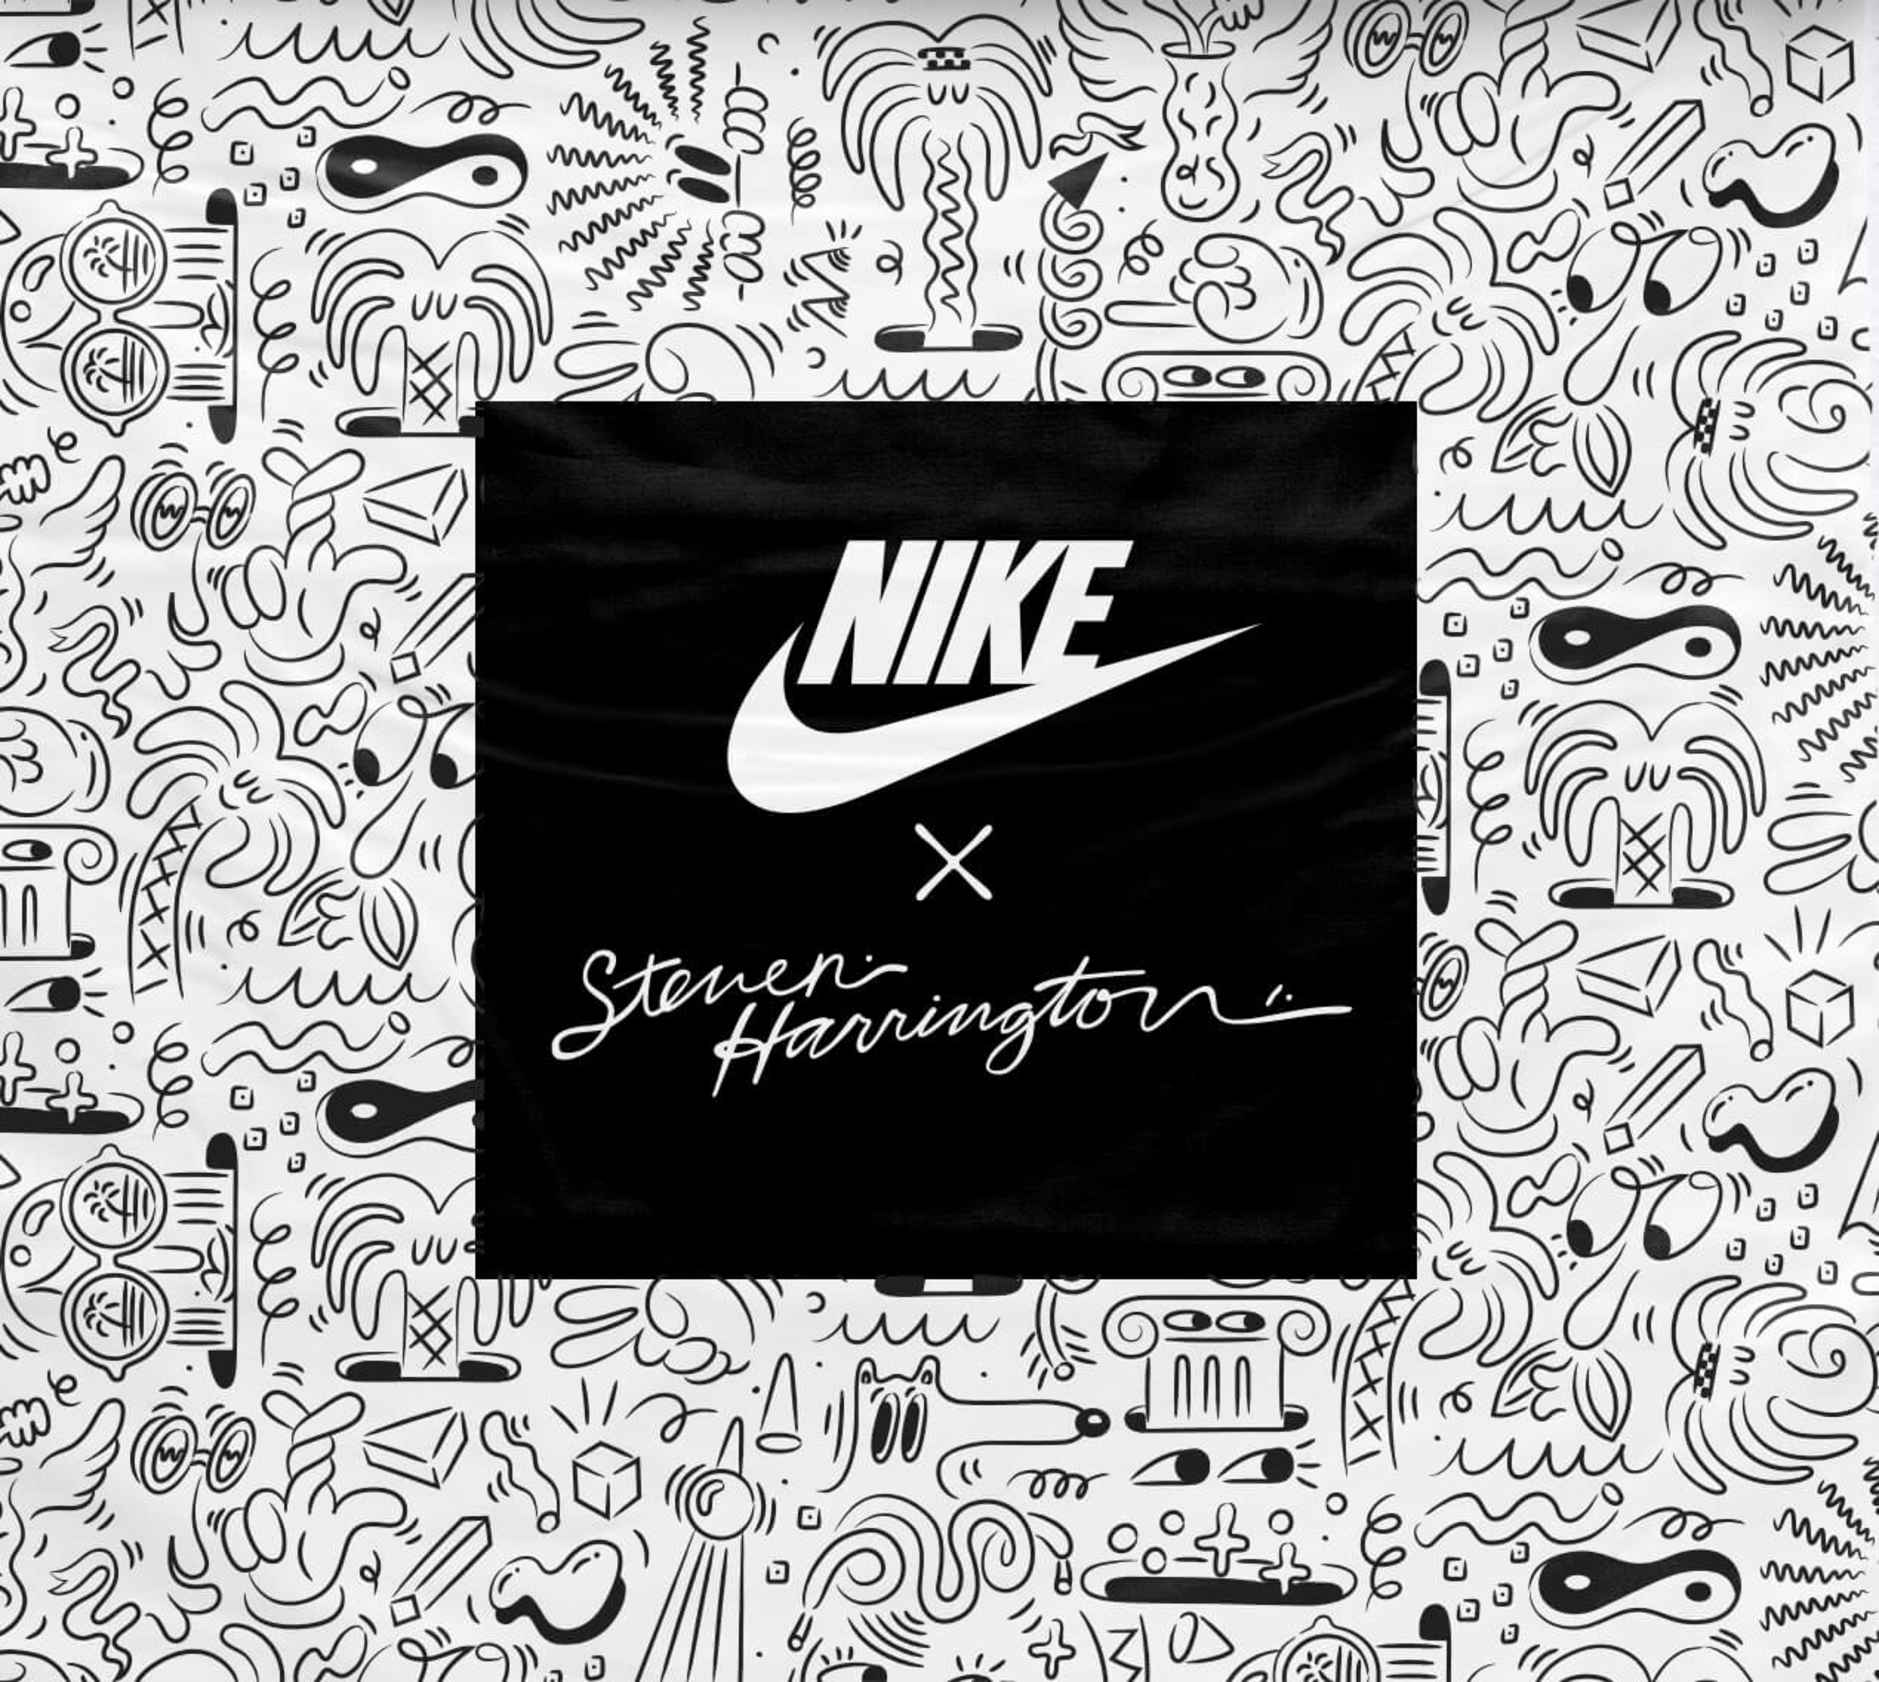 Nike_Steven_Harrington_1